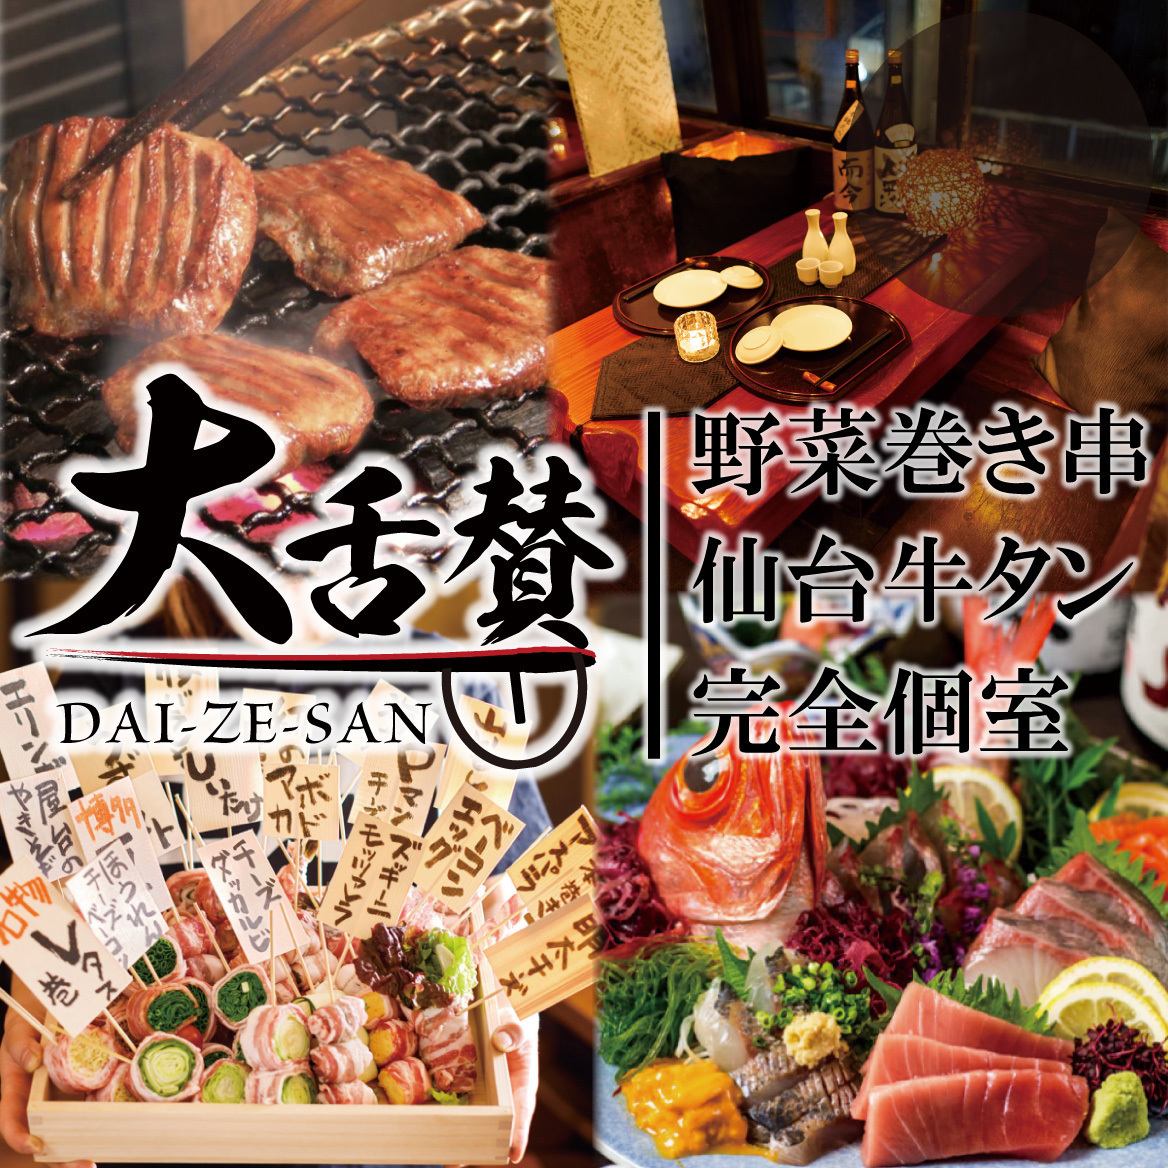 ■正宗日本料理×创意日本料理 大翼新宿东口店 ■24小时接受宴会、招待会/网上预约